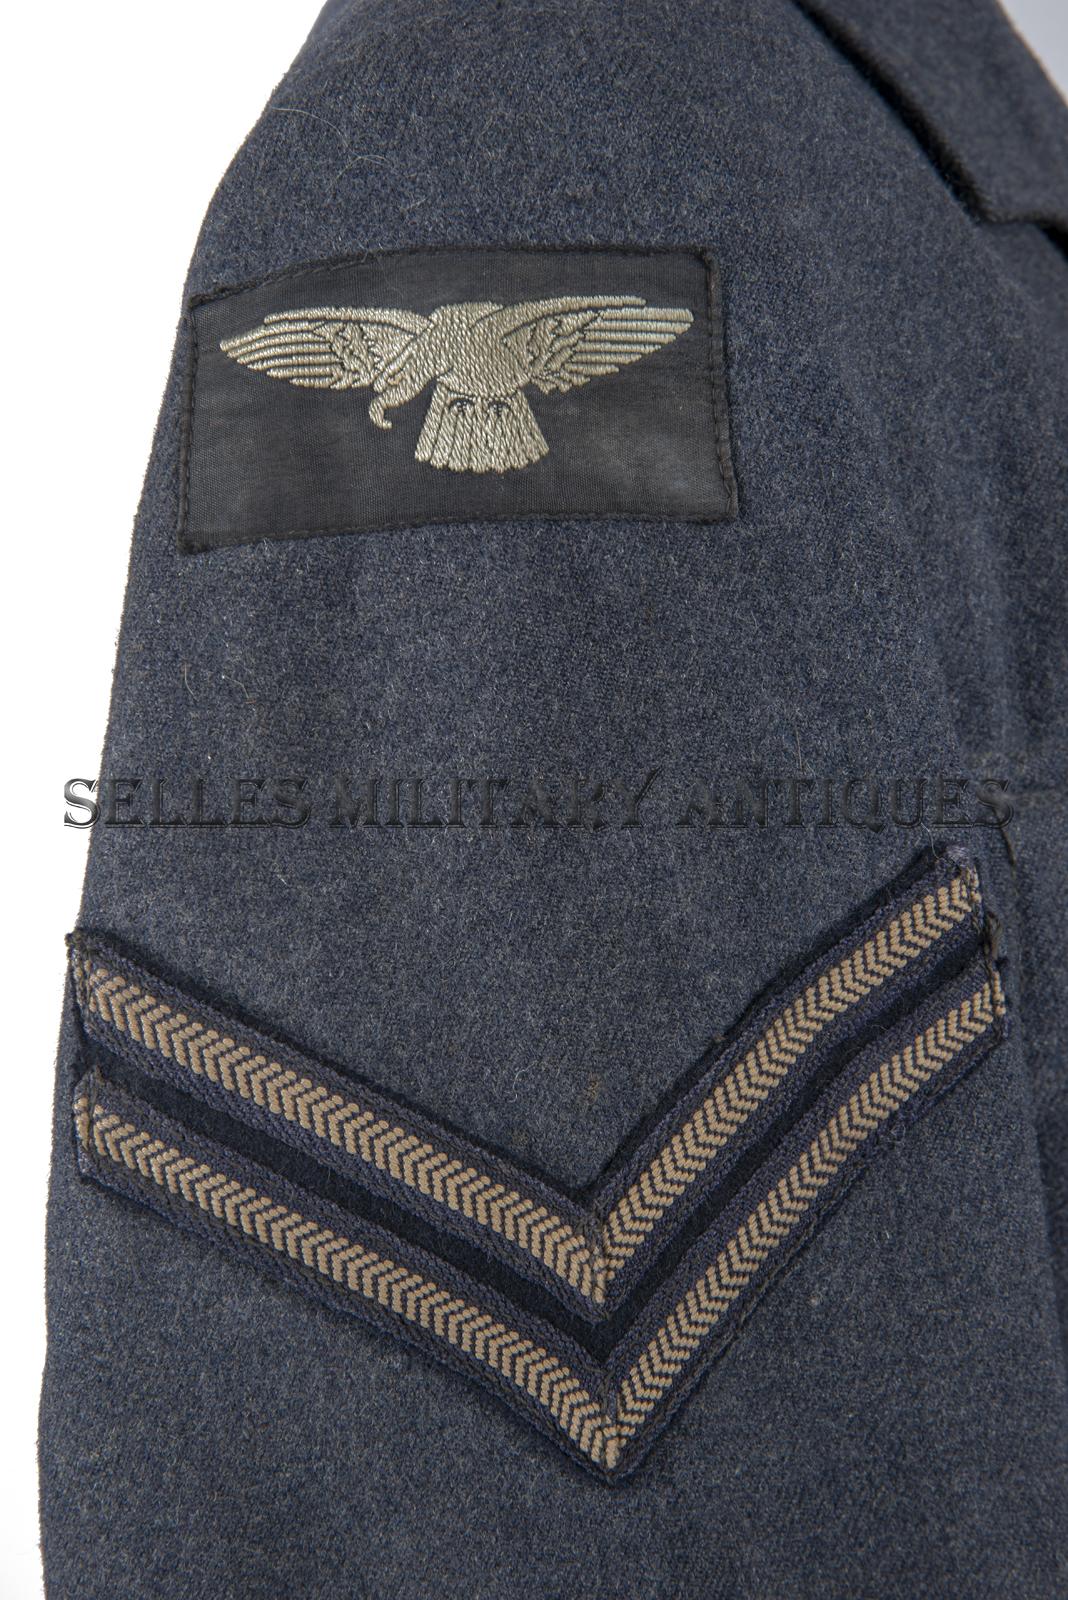 Veste de sortie corporal RAF (7)